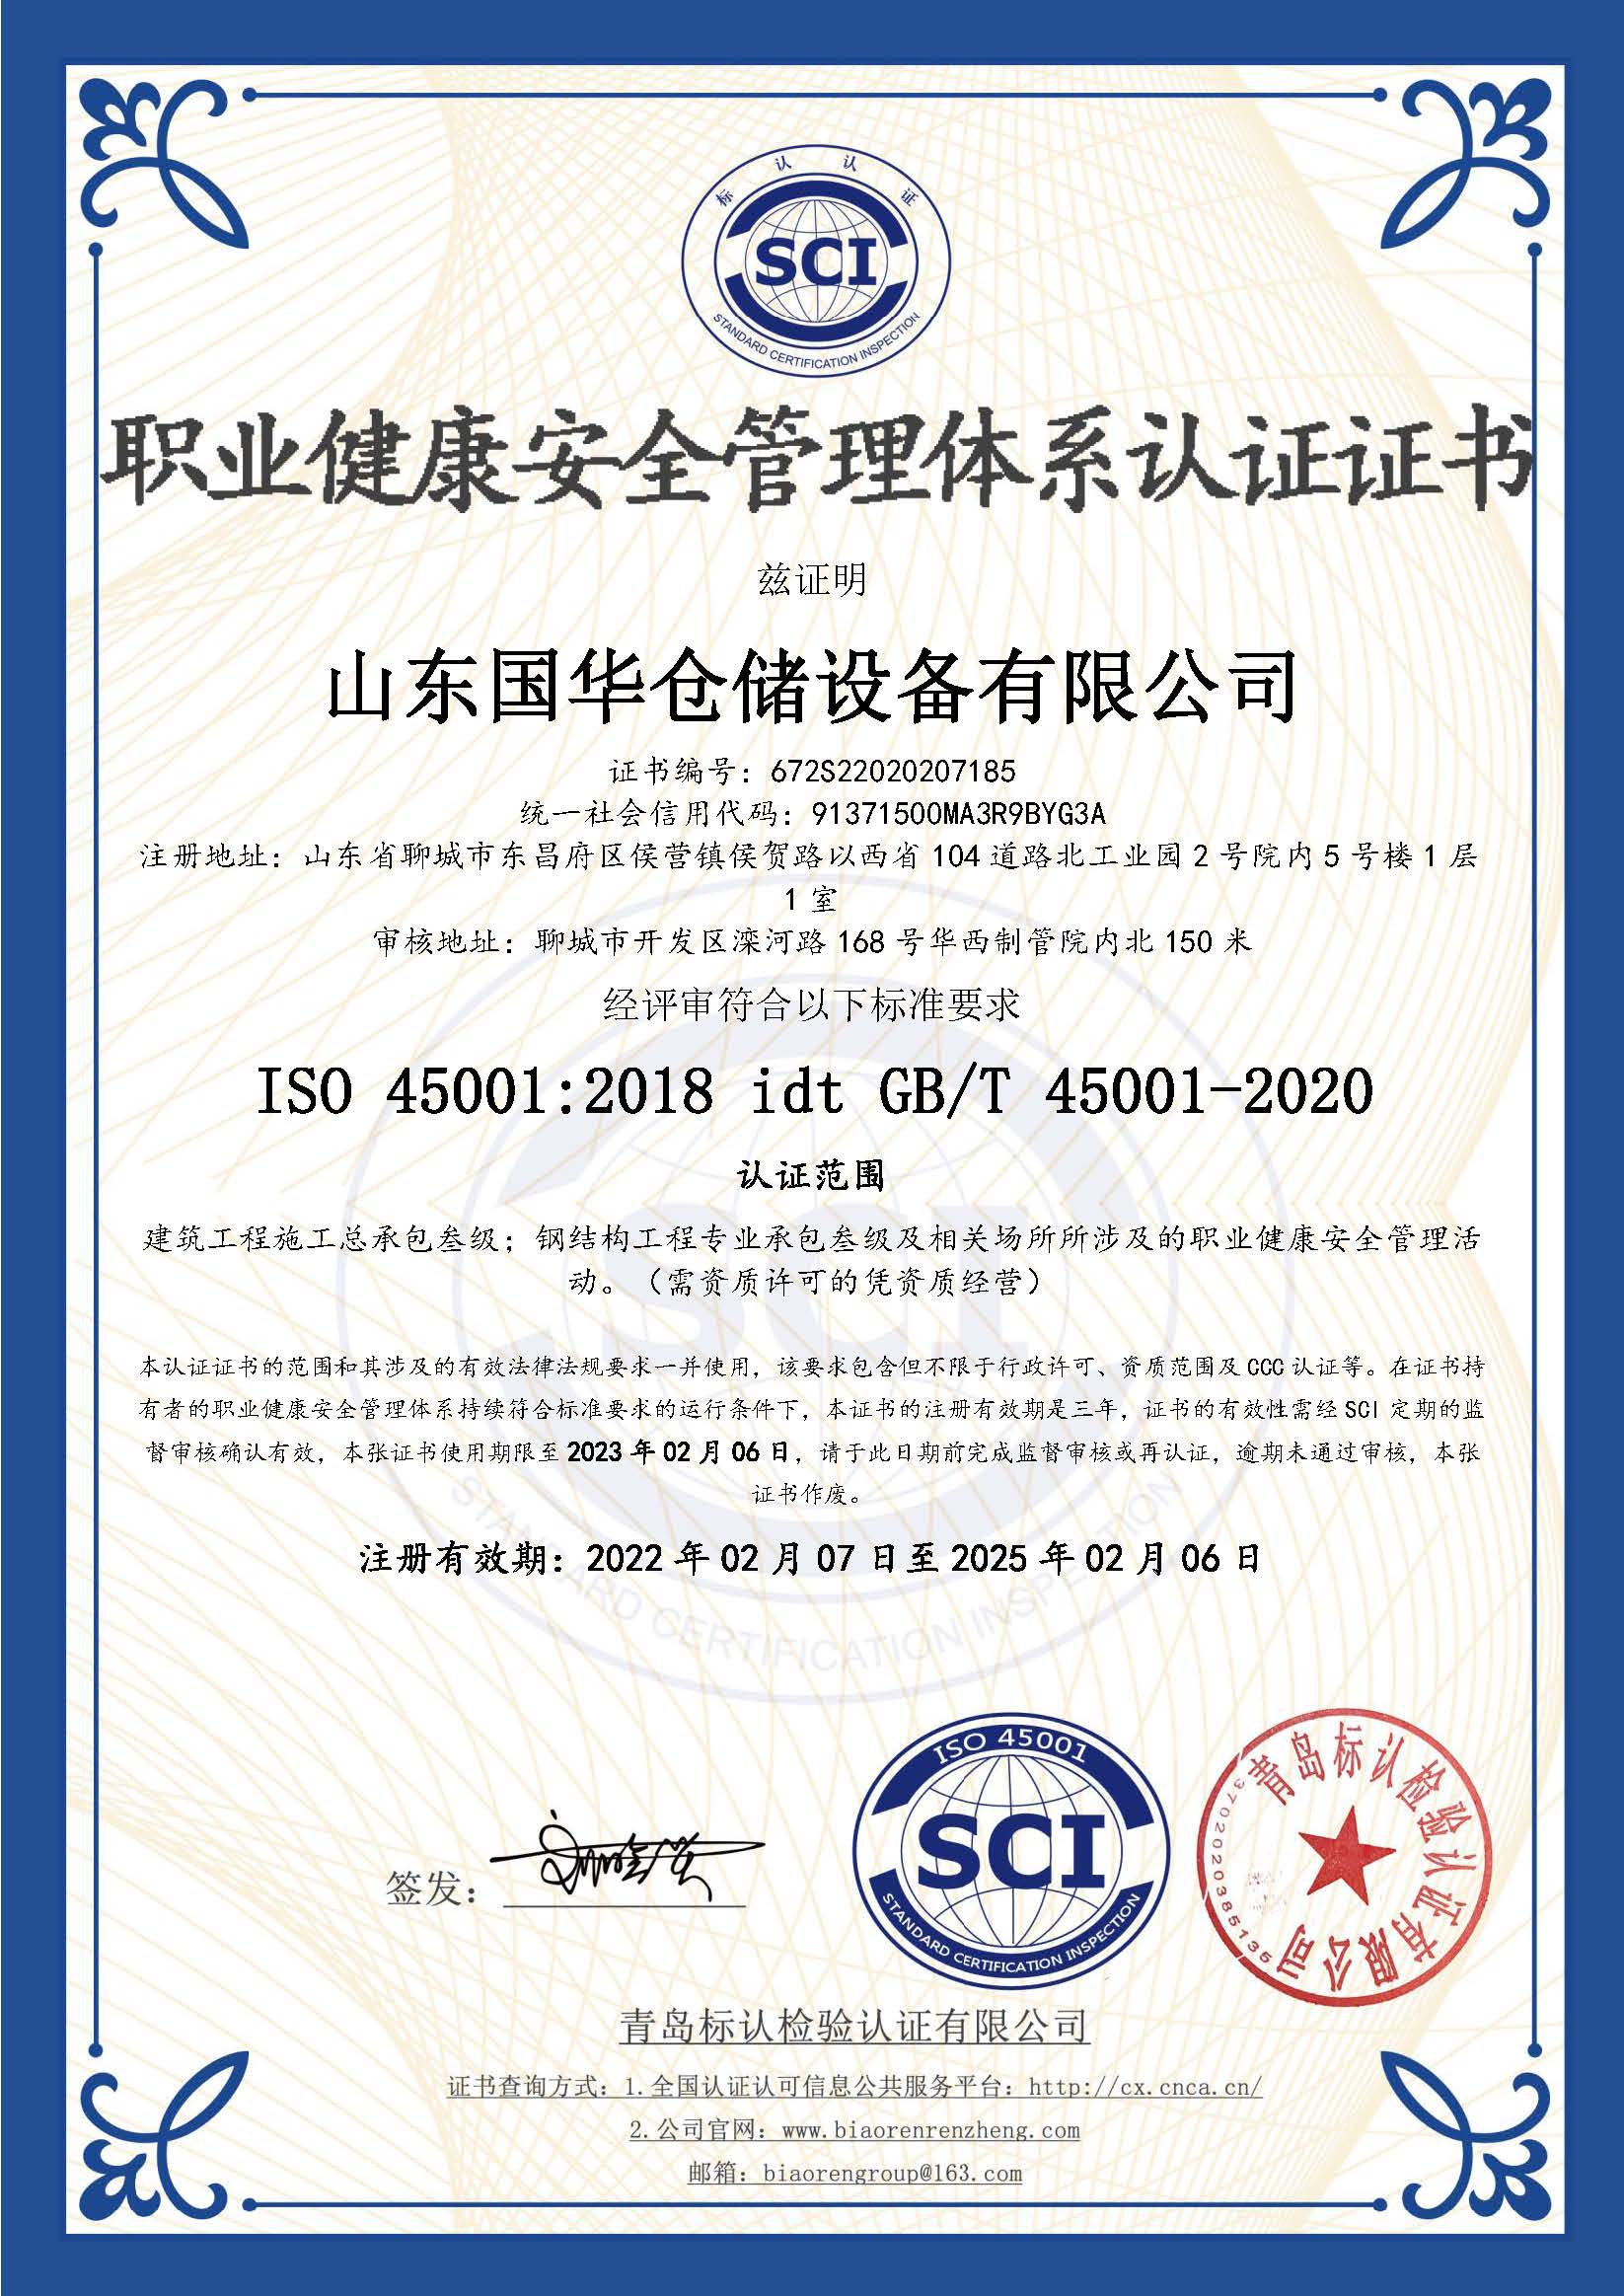 海口钢板仓职业健康安全管理体系认证证书